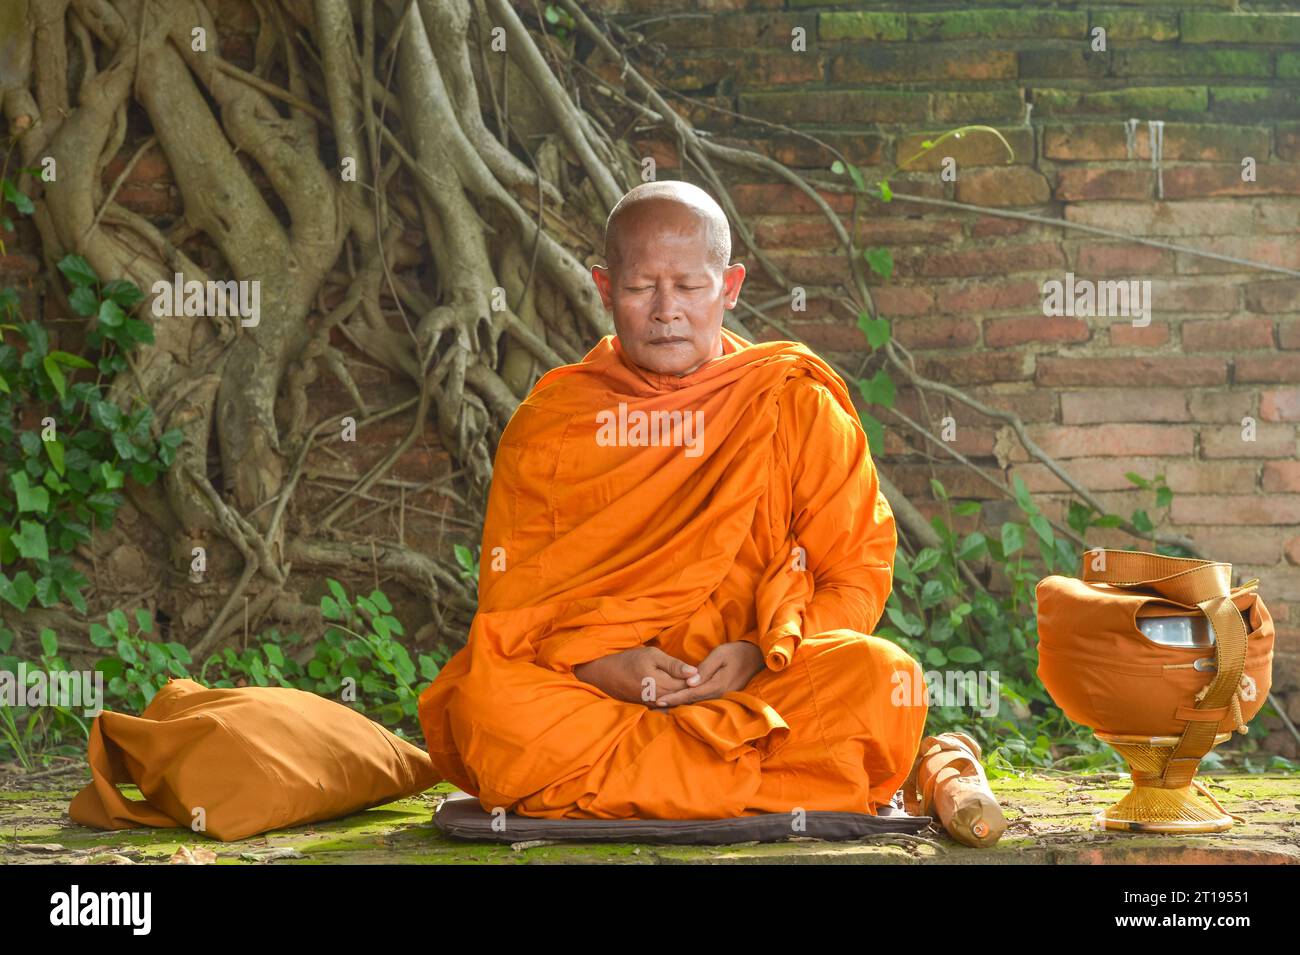 Buddhistischer Mönch in einem traditionellen orangenen Gewand (Kasaya), der in einem Garten sitzt und meditiert, Thailand Stockfoto